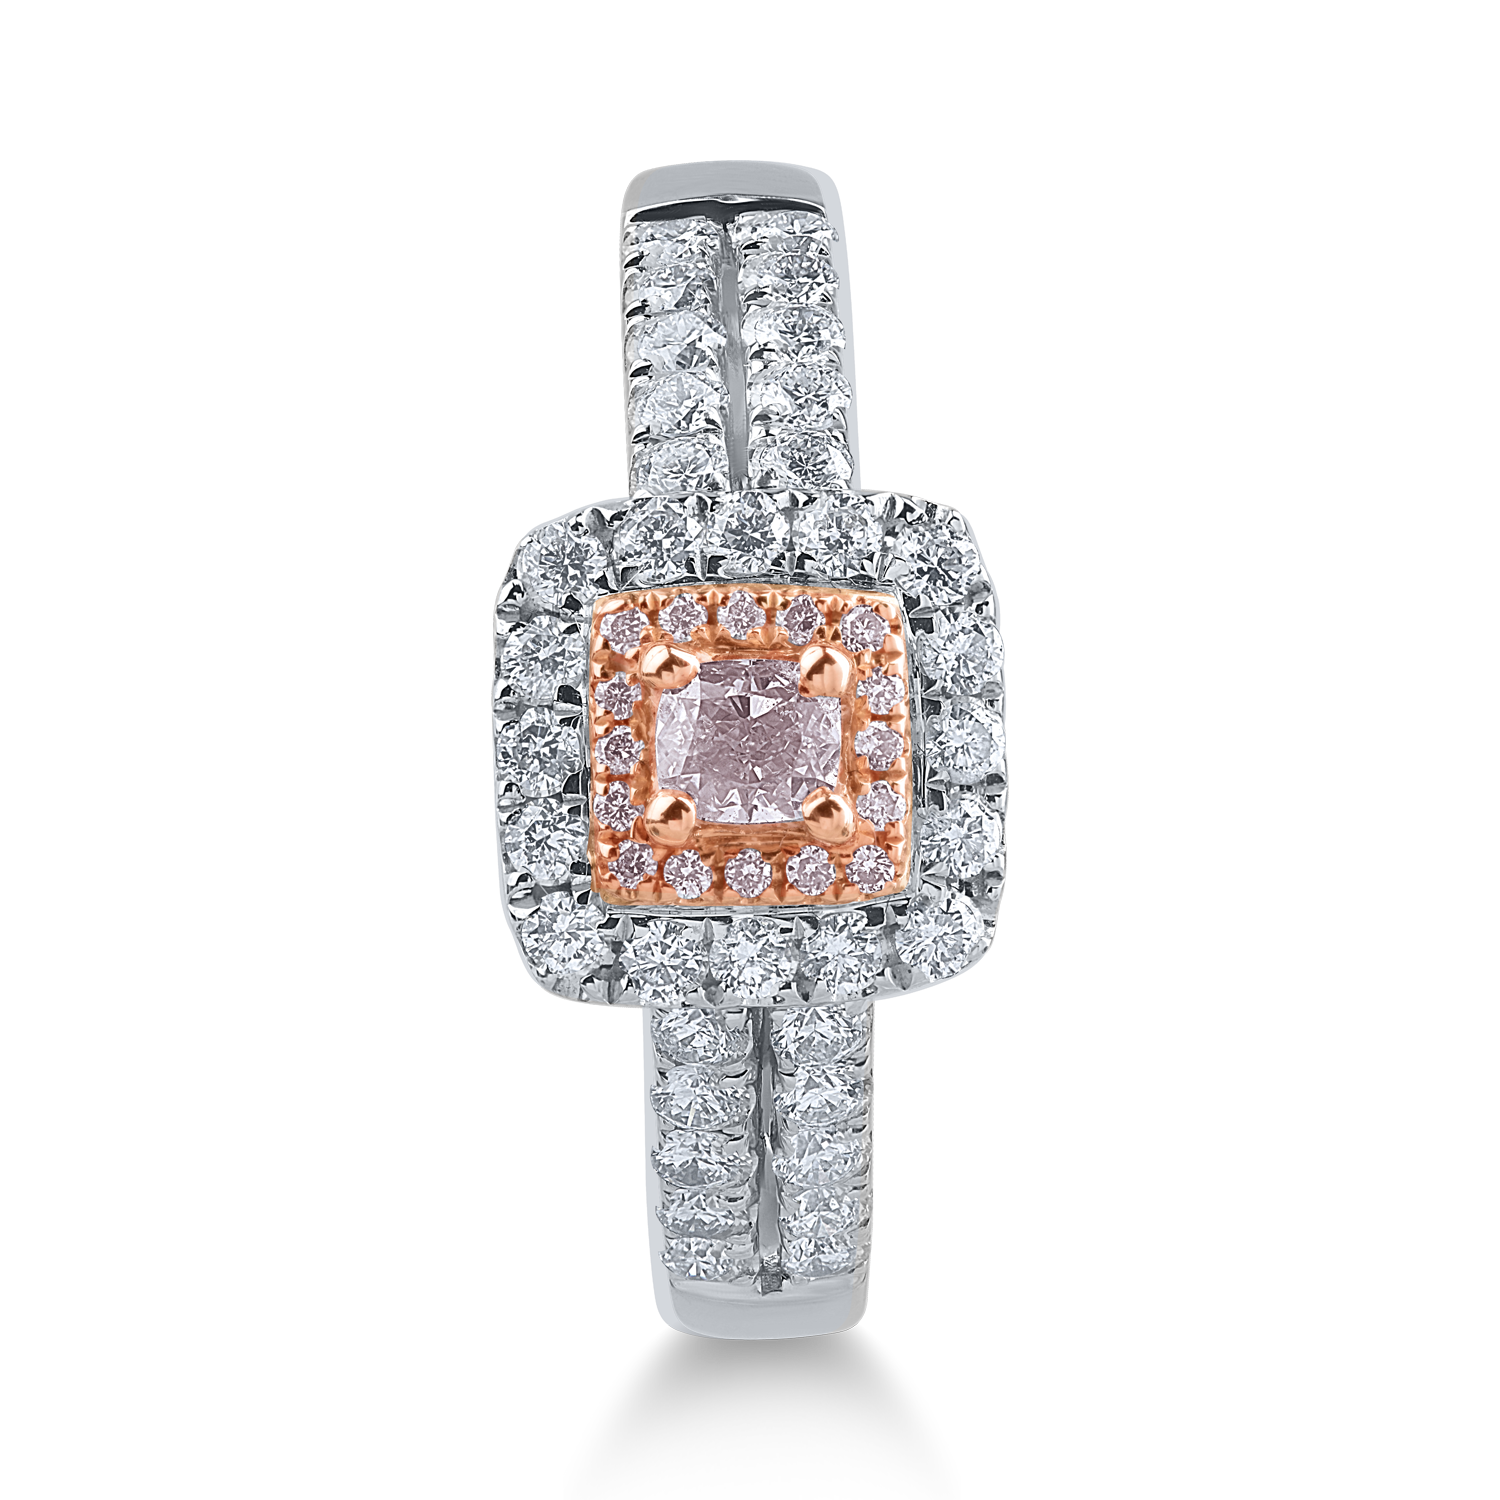 Inel din aur alb-roz cu diamante transparente de 0.49ct si diamante roz de 0.21ct